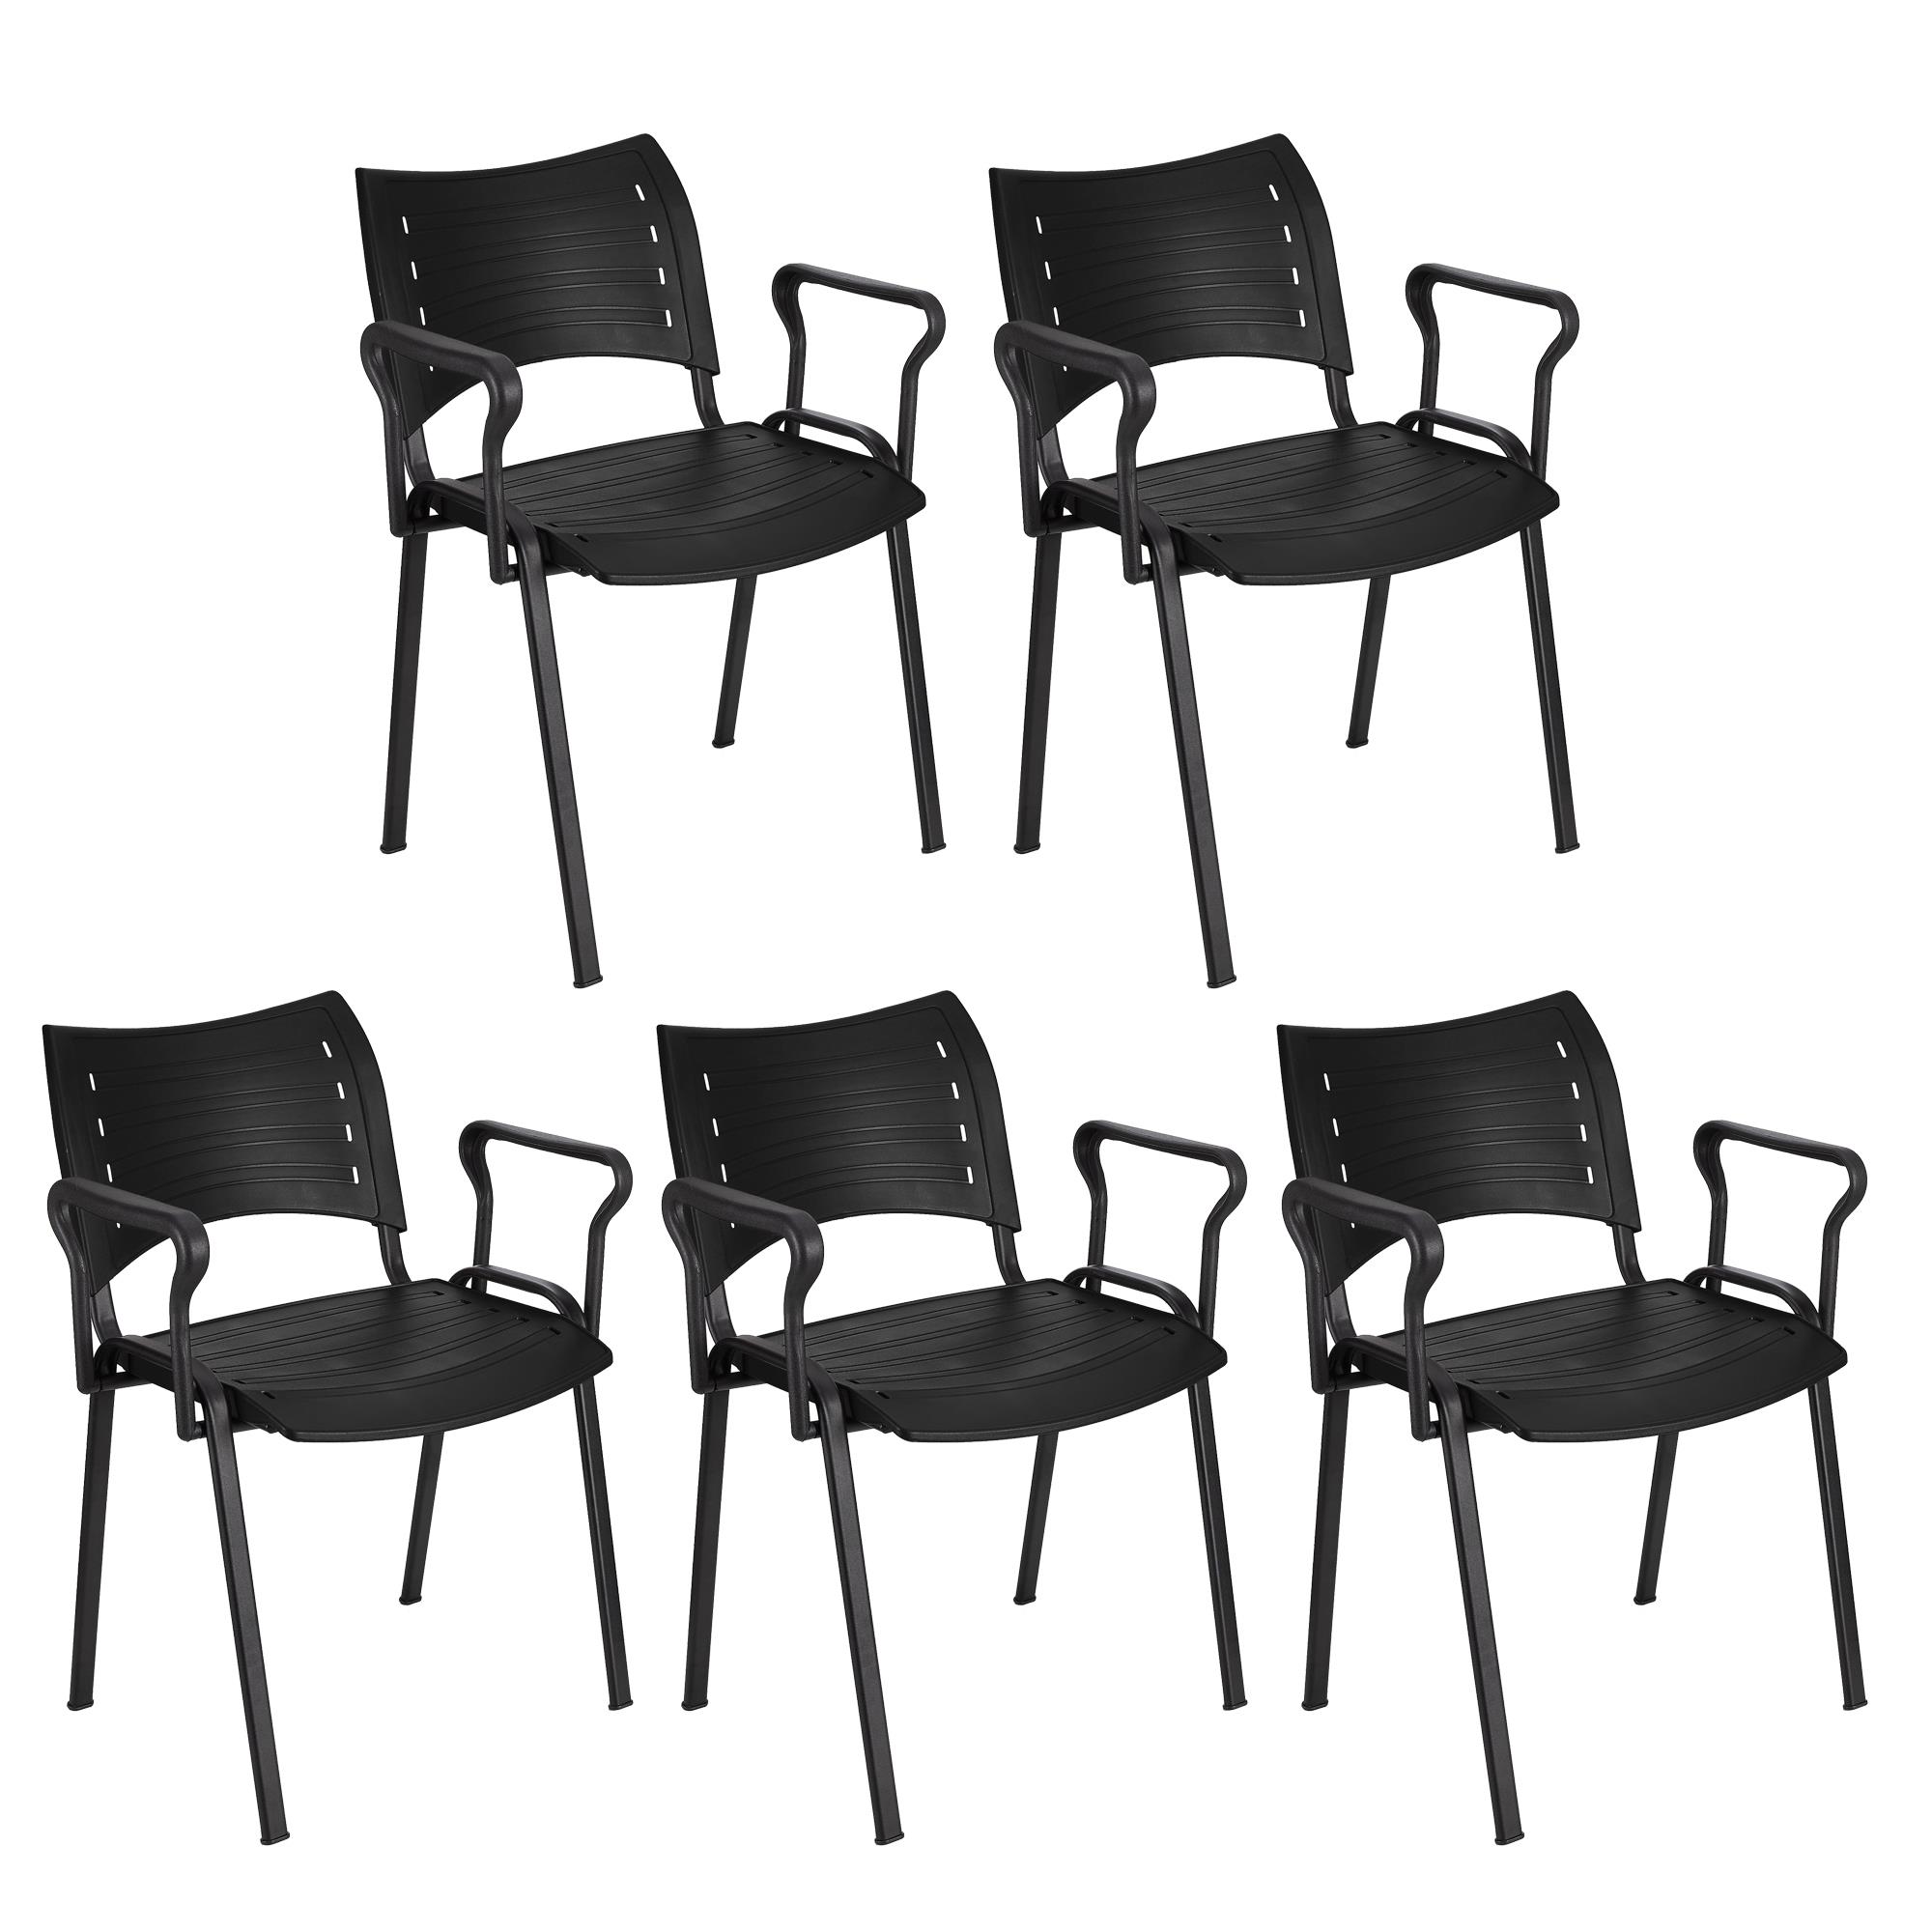 Im 5er-Set: Besucherstuhl ELVA B MIT ARMLEHNEN, stapelbar und sehr praktisch, schwarze Stuhlbeine, Farbe Schwarz